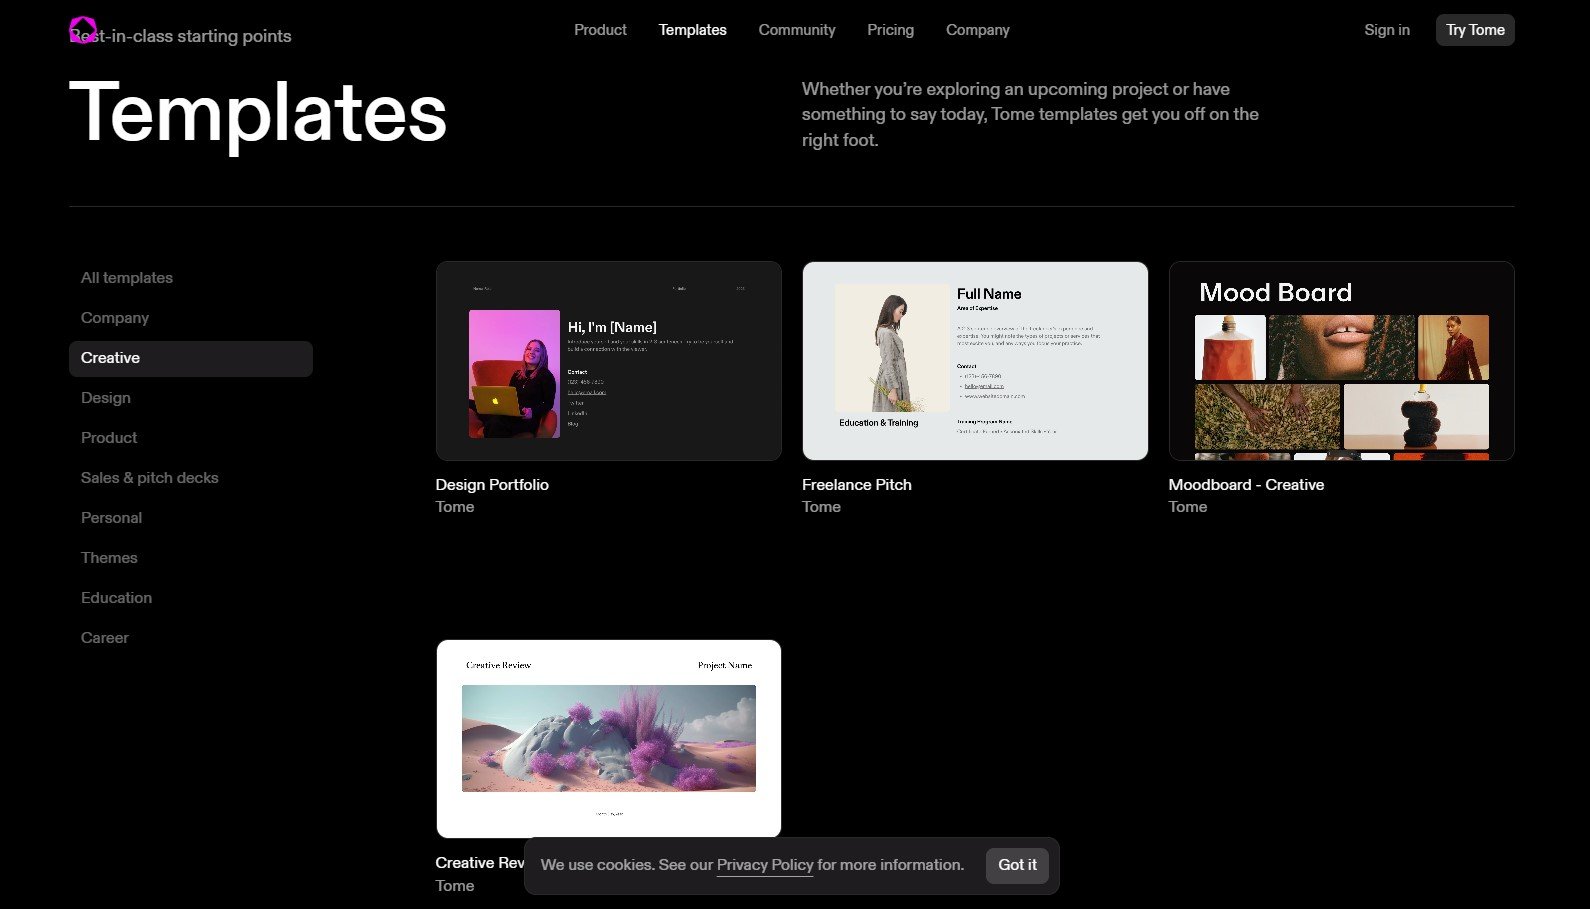 OTome App traz um leque extenso de opções para a criação de projetos visuais